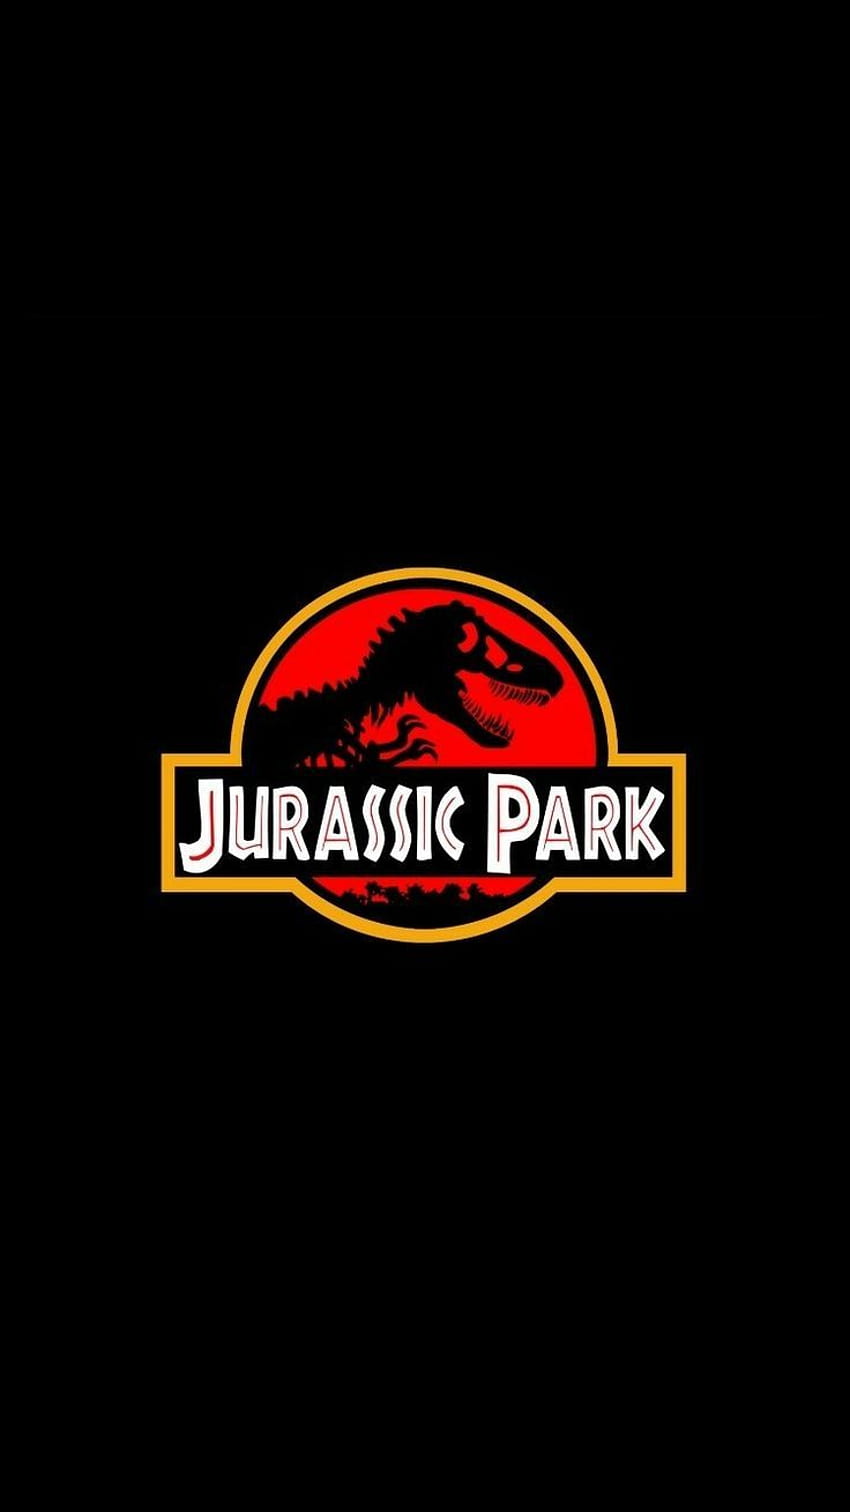 Jurassic-Park-Telefon. Fondos de dinosaurios, Parque jurásico, Fondos de patalla. Jurassic Park, Jurassic Park-Film, Jurassic World, Jurassic Park-Logo HD-Handy-Hintergrundbild